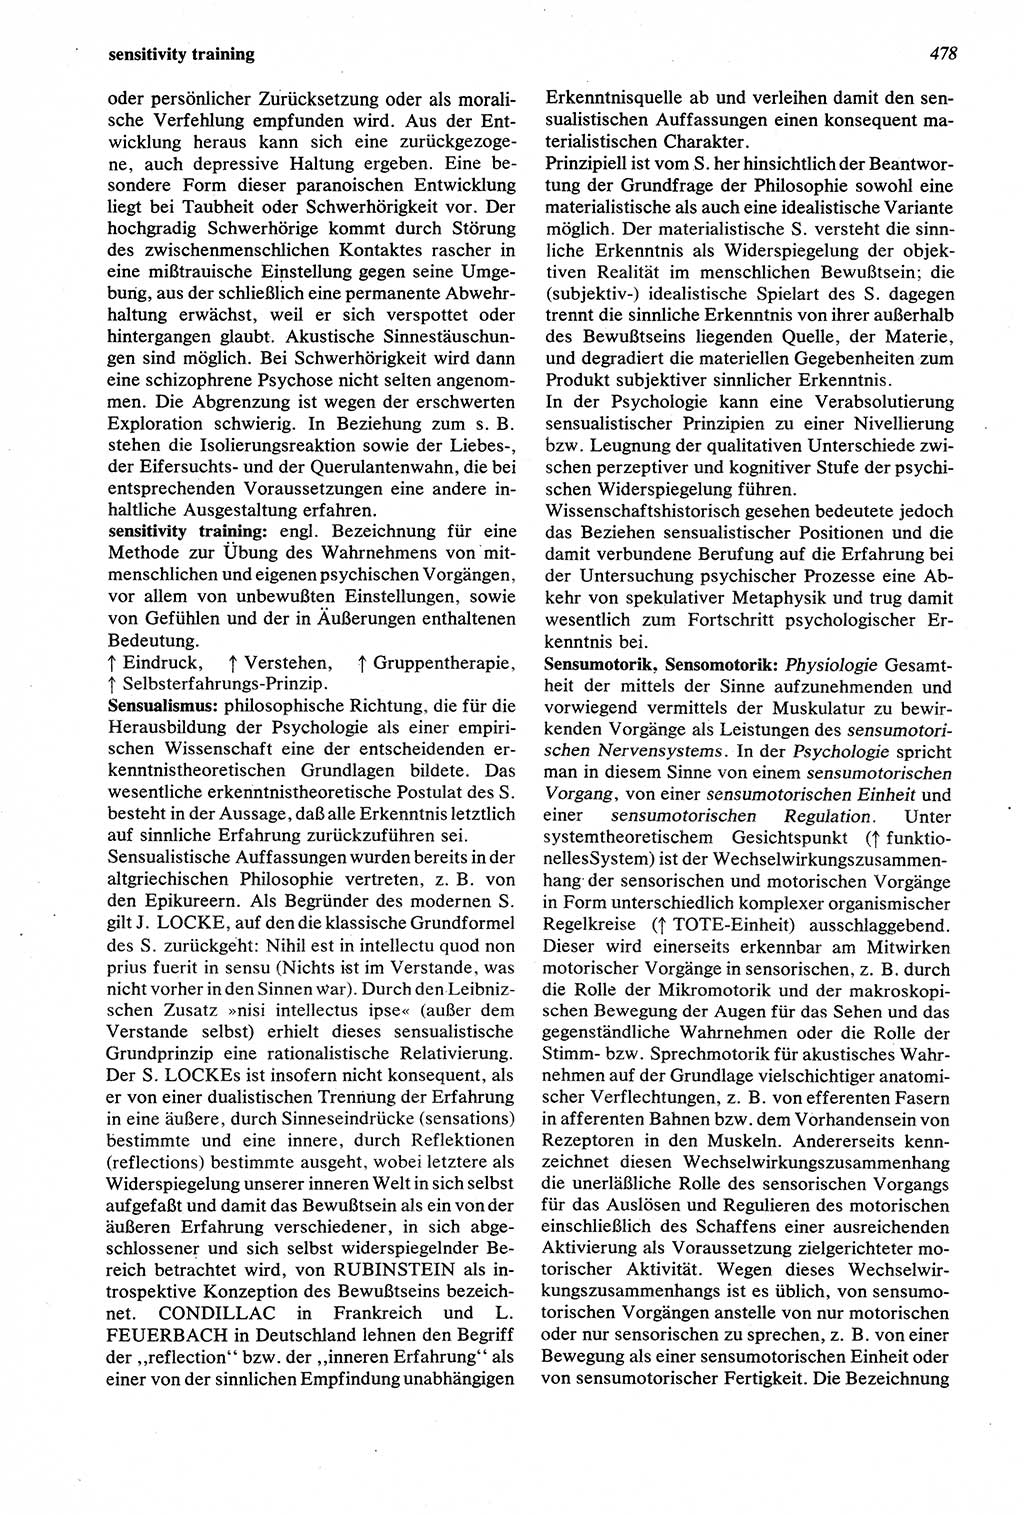 Wörterbuch der Psychologie [Deutsche Demokratische Republik (DDR)] 1976, Seite 478 (Wb. Psych. DDR 1976, S. 478)